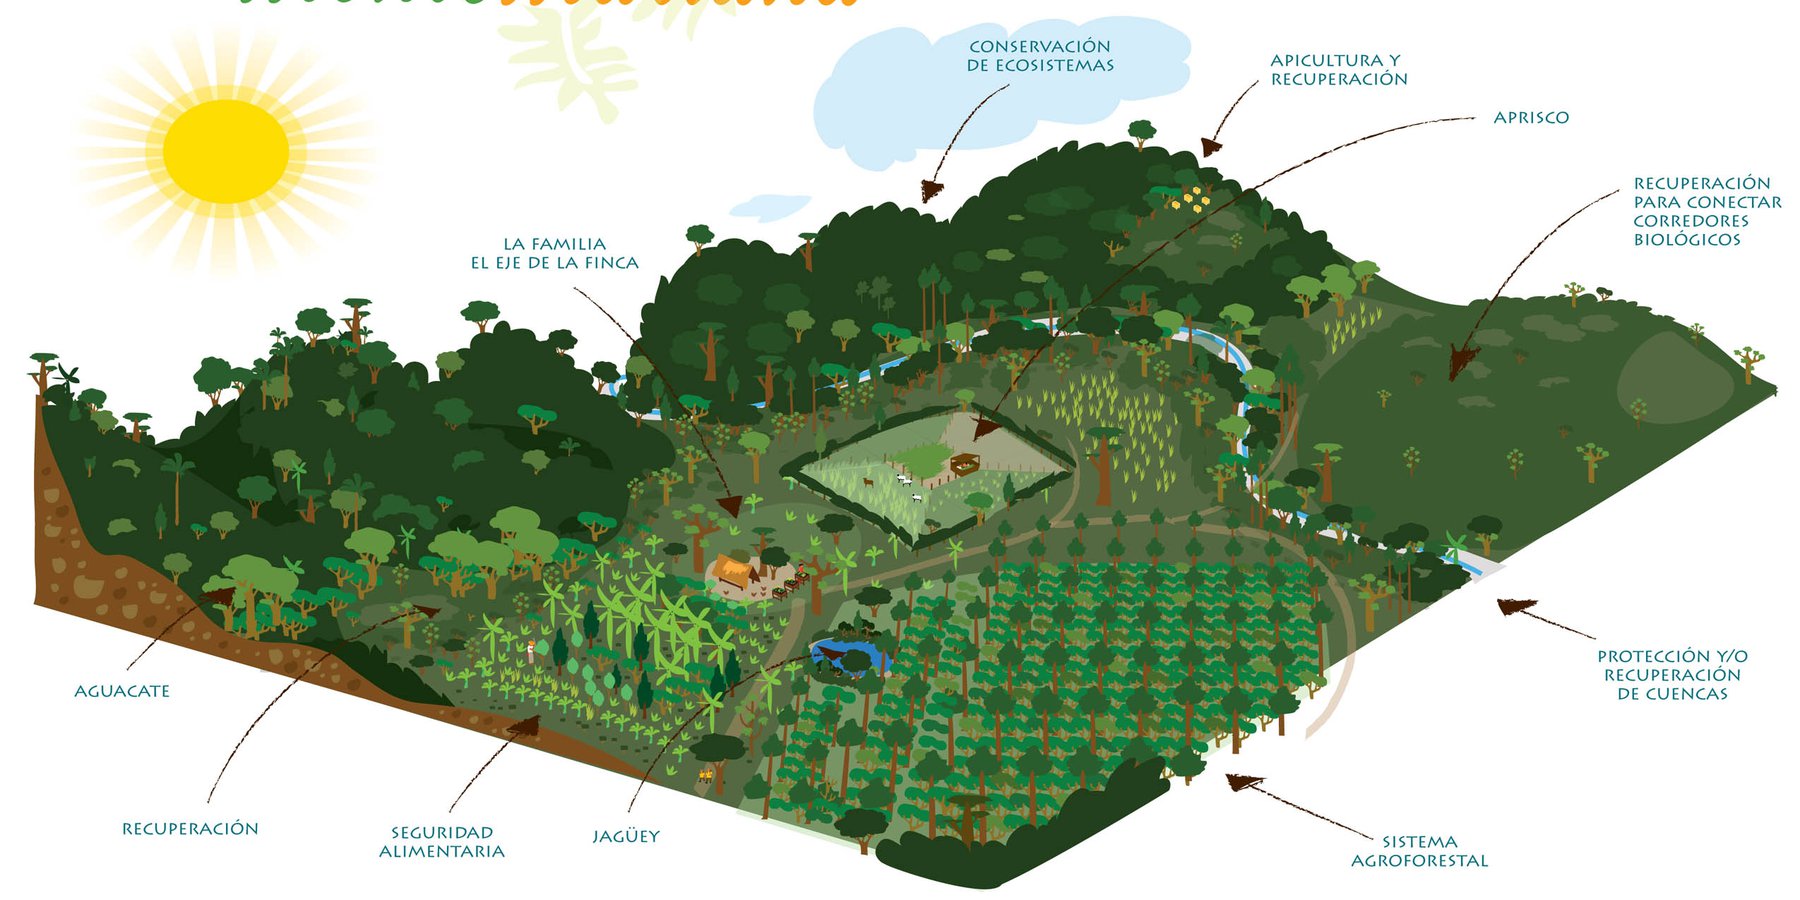 Ilustración de las tecnologias de manejo sostenible de la tierra que componen el modelo de Finca Montemariana. El Sistema Agroforestal que describimos a continuación es una de estas tecnologías.